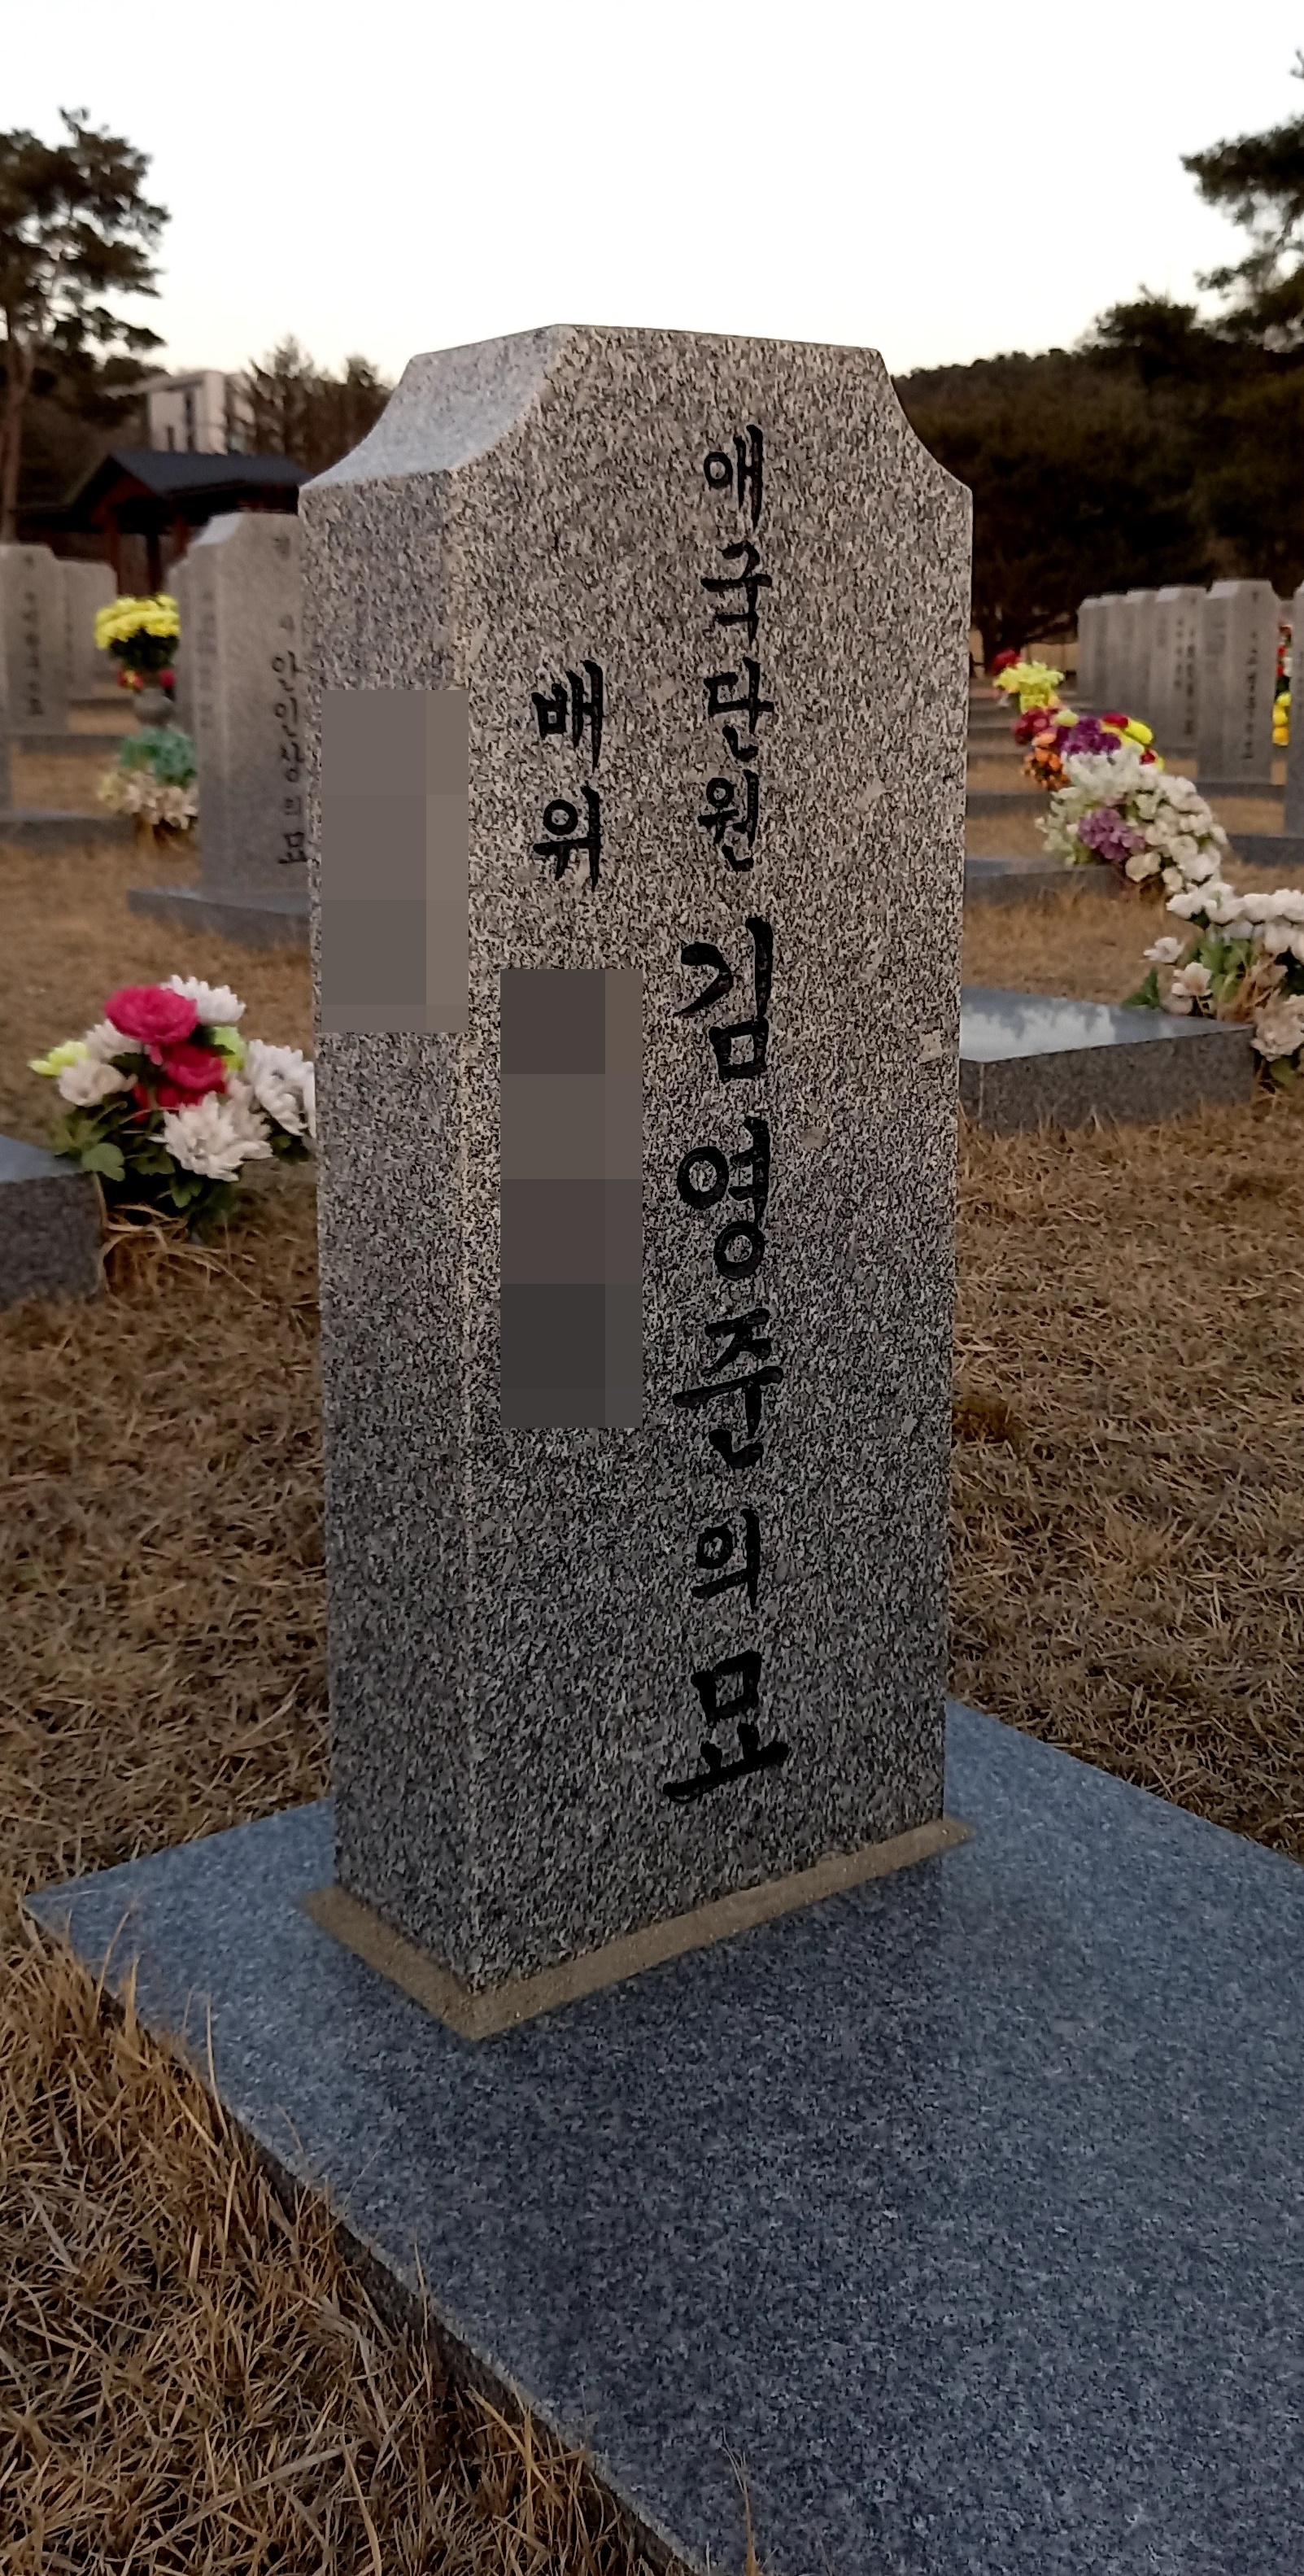  대전국립현충원 경찰묘역에 안장된 김영준 묘. '애국단원'으로 표기돼 있다. 김영준은  일제감점기 친일행위로 친일인명사전에 이름을 올렸고, 여순사건 과정에서 친일전력과 우익활동을 이유로 적대세력에 의해 1948년 10월 살해됐다.